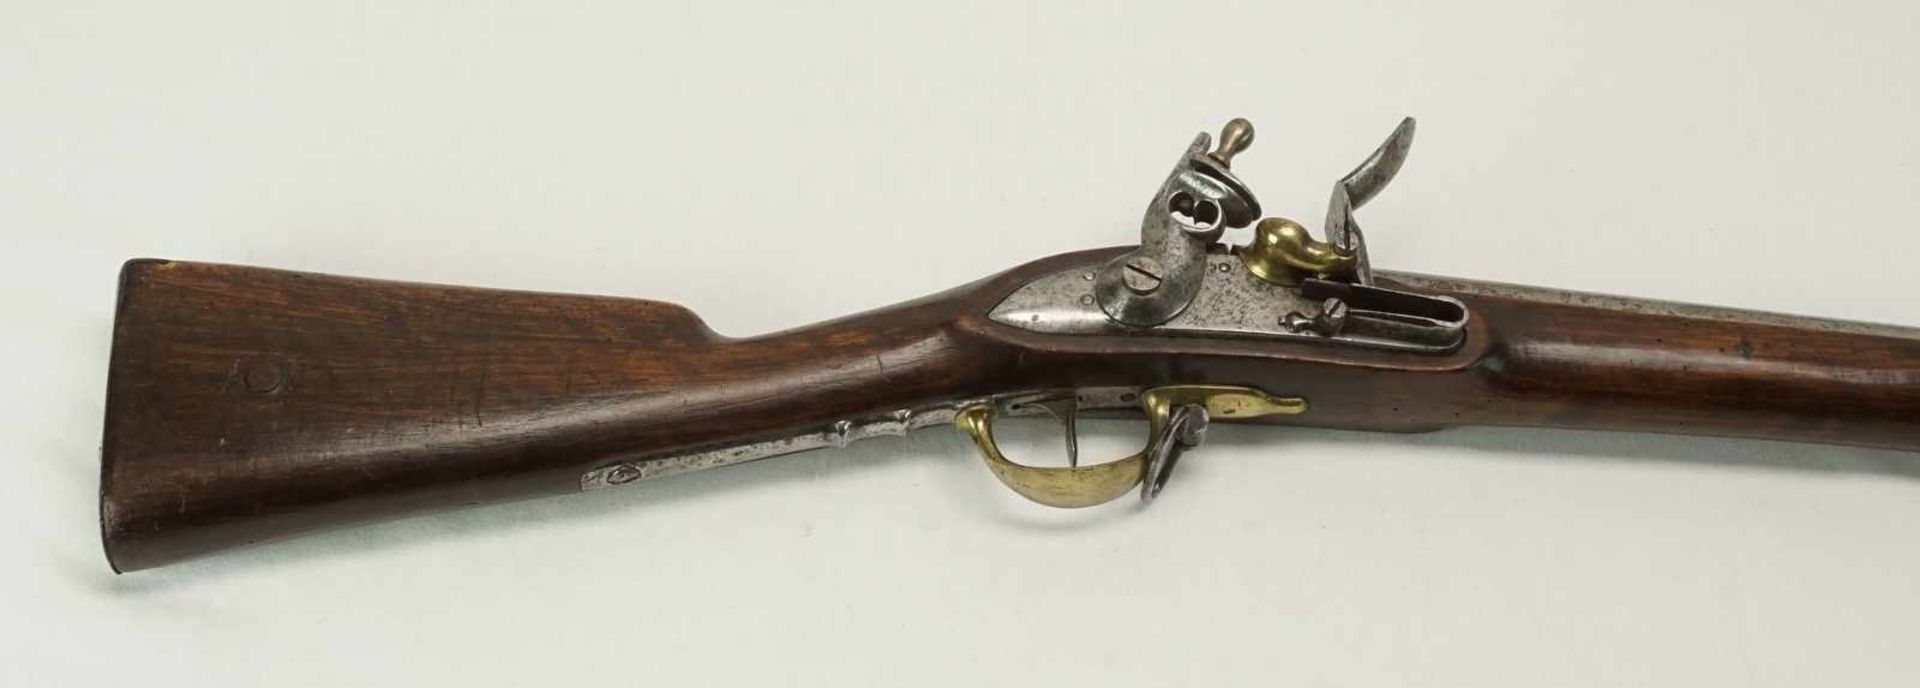 Tulle Dragoner Steinschlossgewehr mit Bajonett Frankreich, 18151. französisches Kaiserreich,